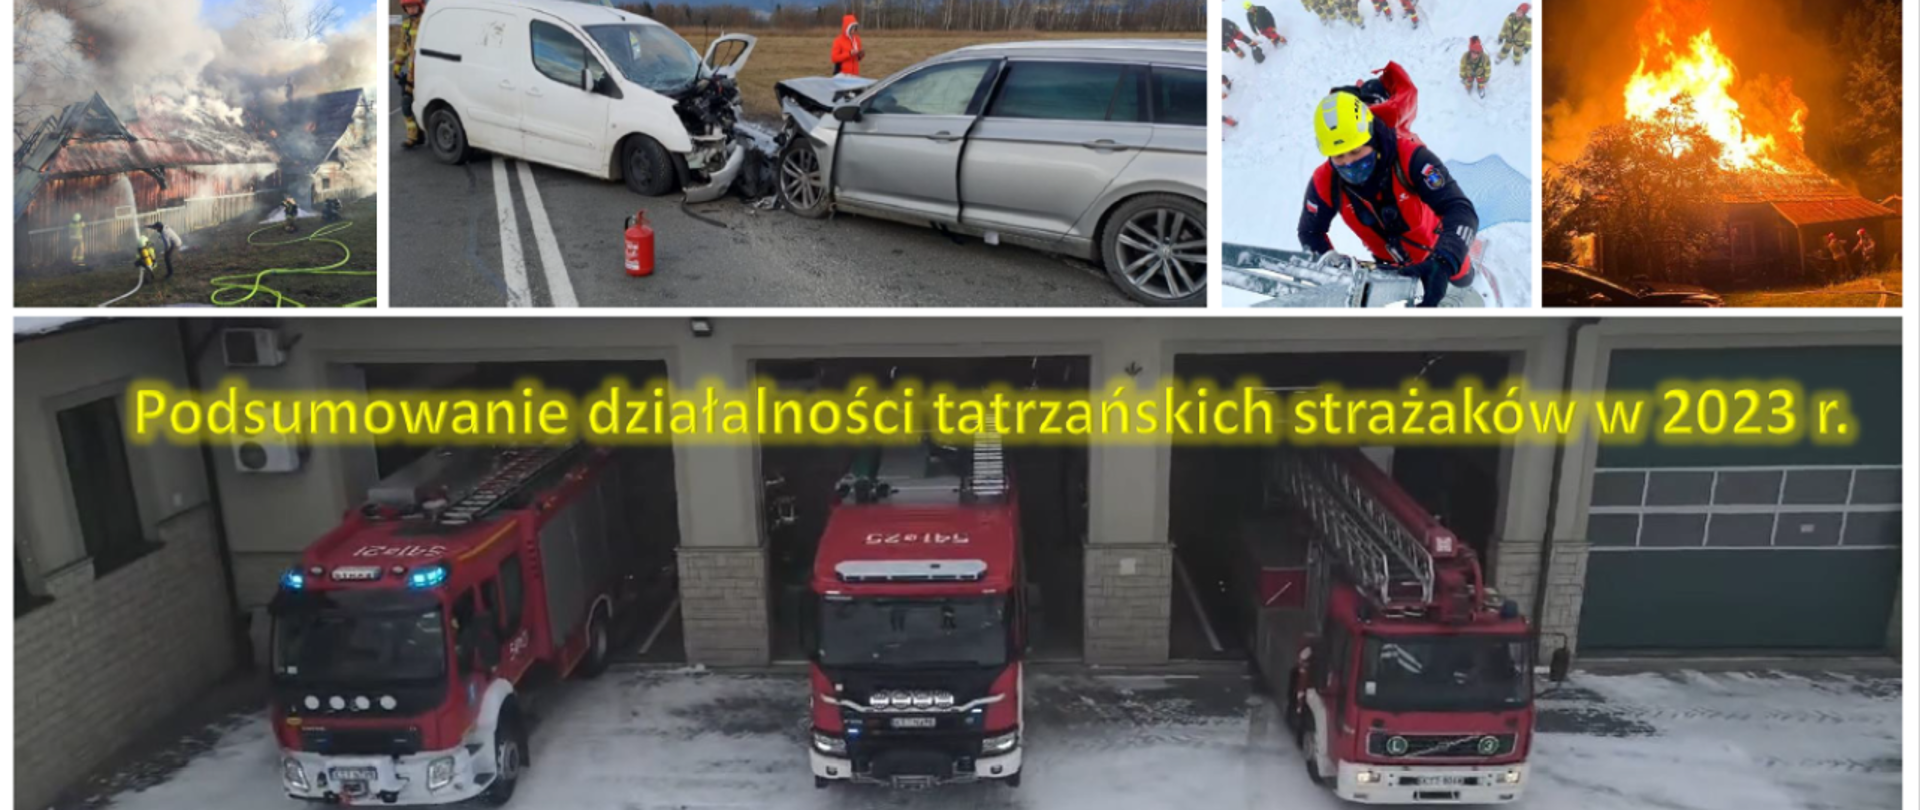 Podsumowanie działalności tatrzańskich strażaków w 2023 r.